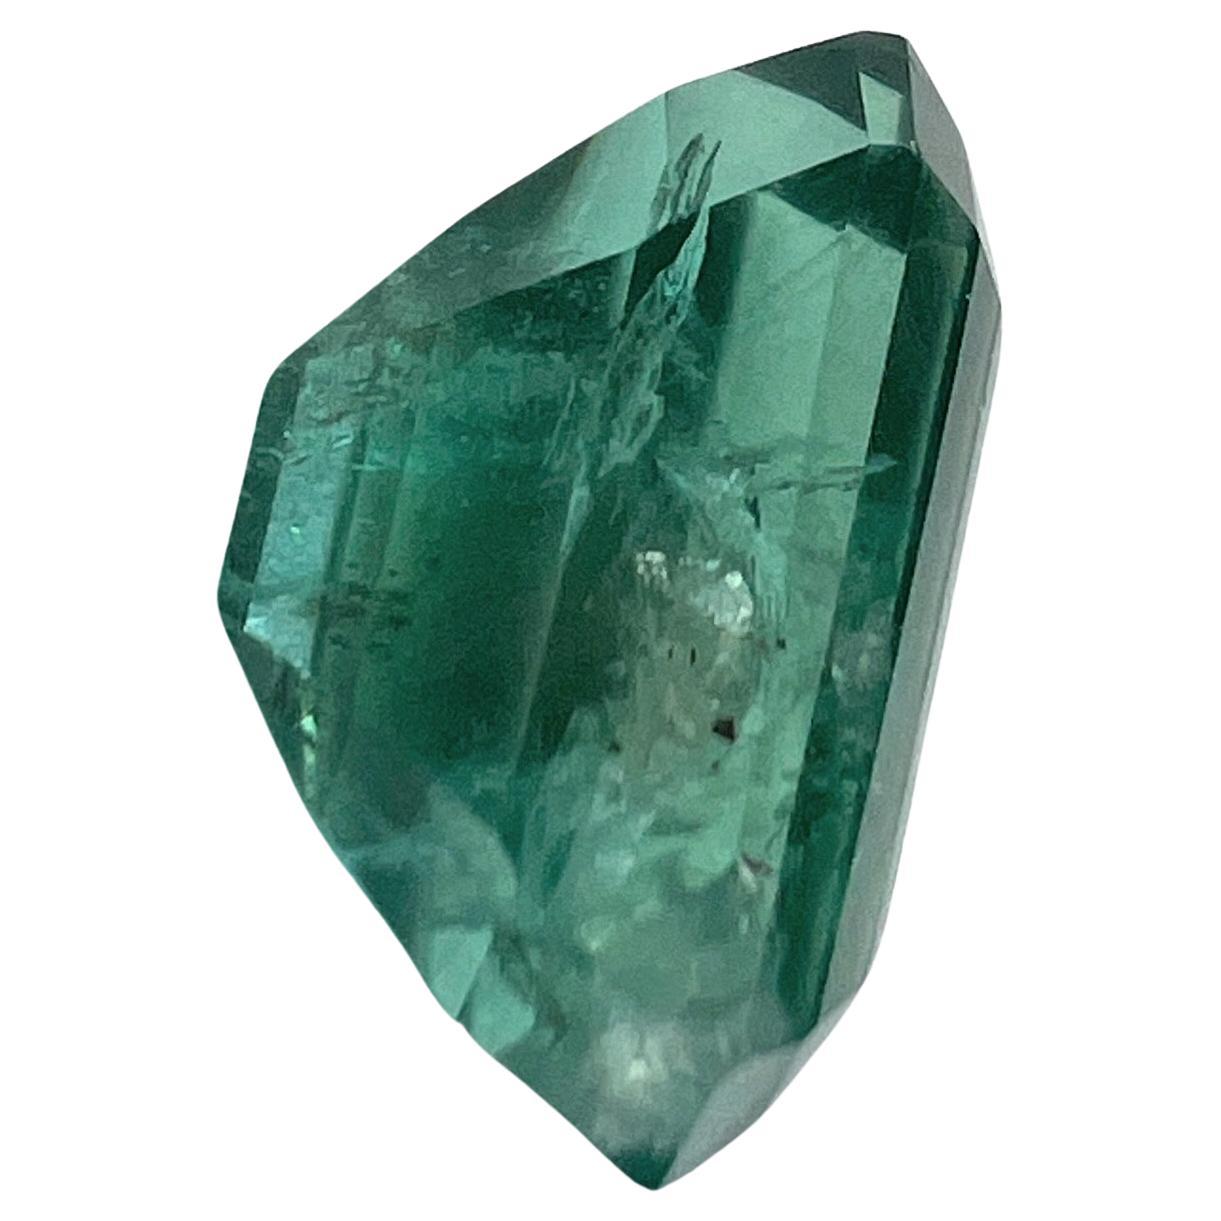 Entdecken Sie den Inbegriff von Design-Luxus mit unserem 4,80ct ölfreien natürlichen grünen Smaragd-Edelstein. Dieser Edelstein ist für seine bemerkenswerte Klarheit und seine für einen Smaragd makellose Zusammensetzung bekannt und ist eine wahre